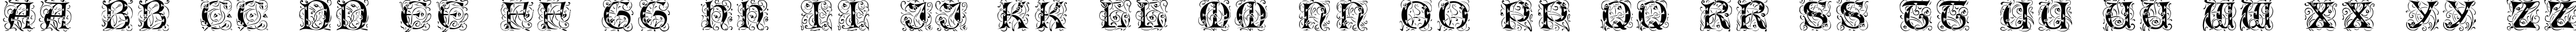 Пример написания английского алфавита шрифтом Eileen Caps Black